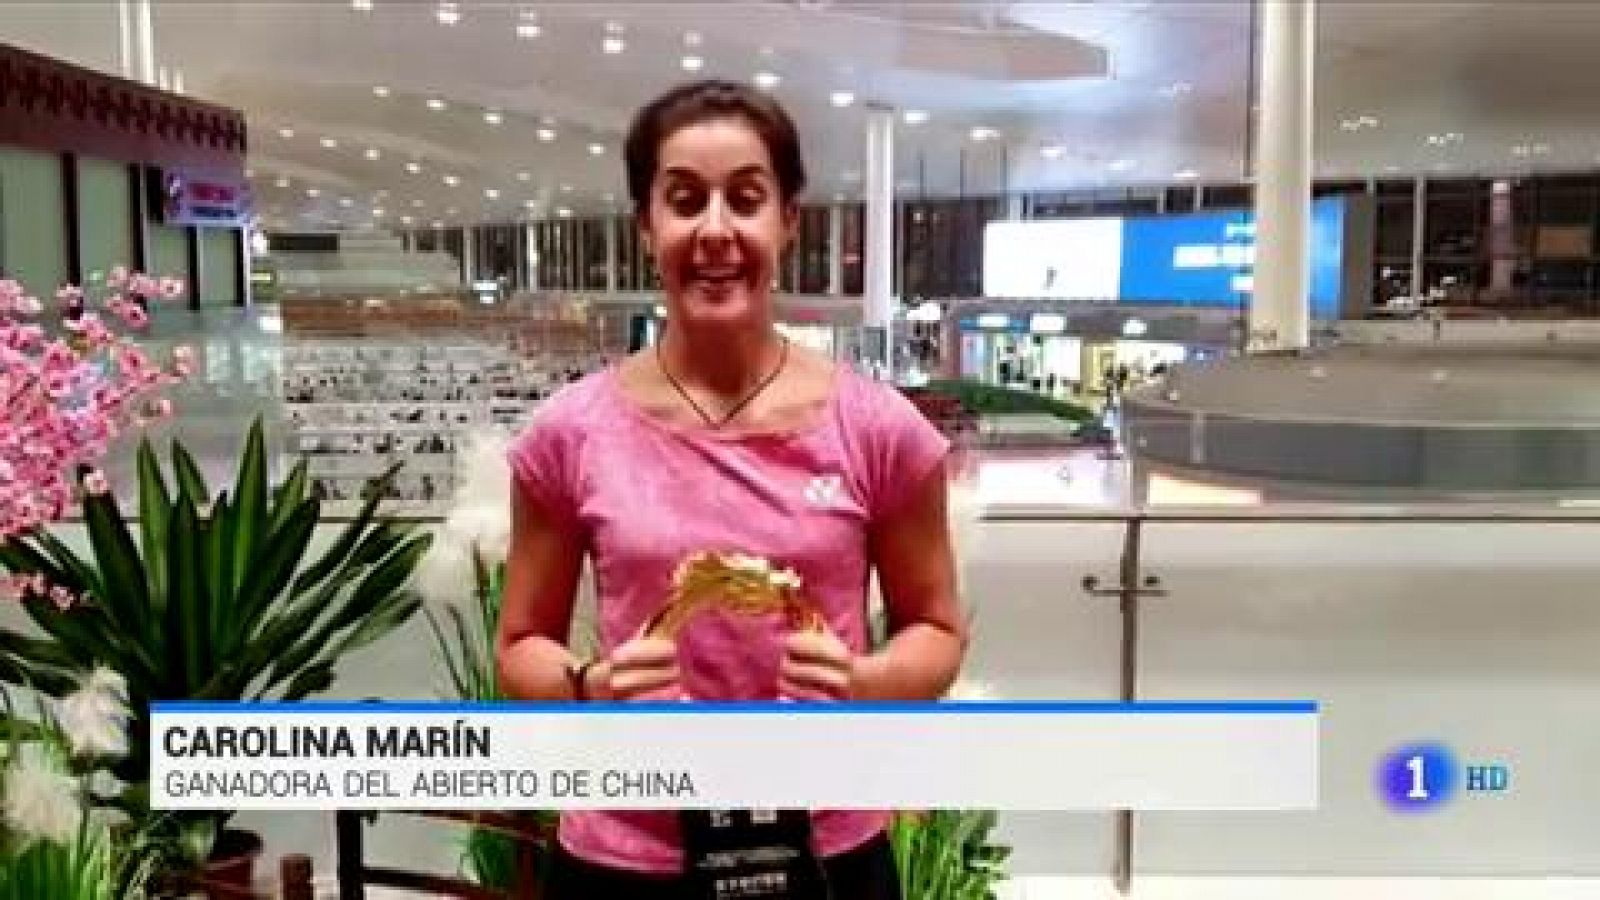 Marín gana el Abierto de China ocho meses después de su grave lesión